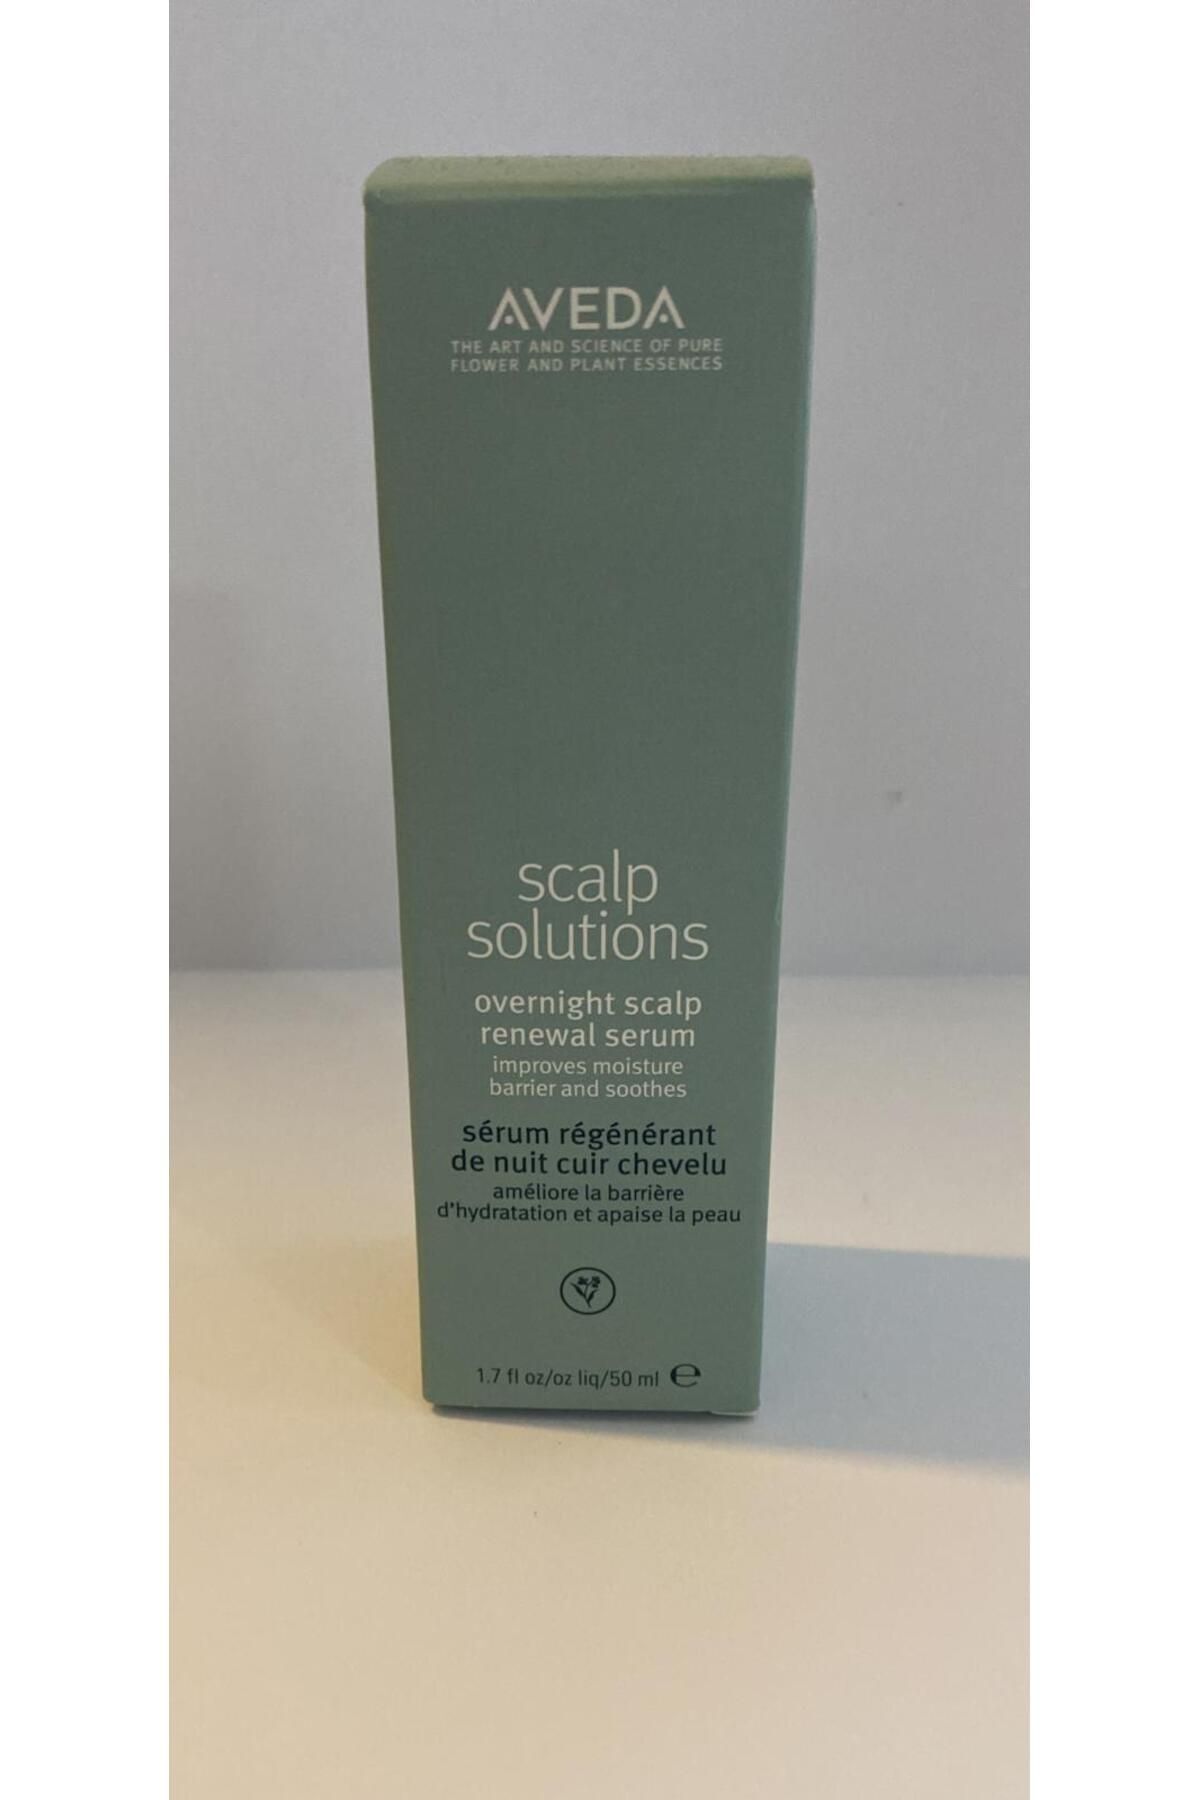 Aveda Scalp Solutions Serum pearlNOONLINE19